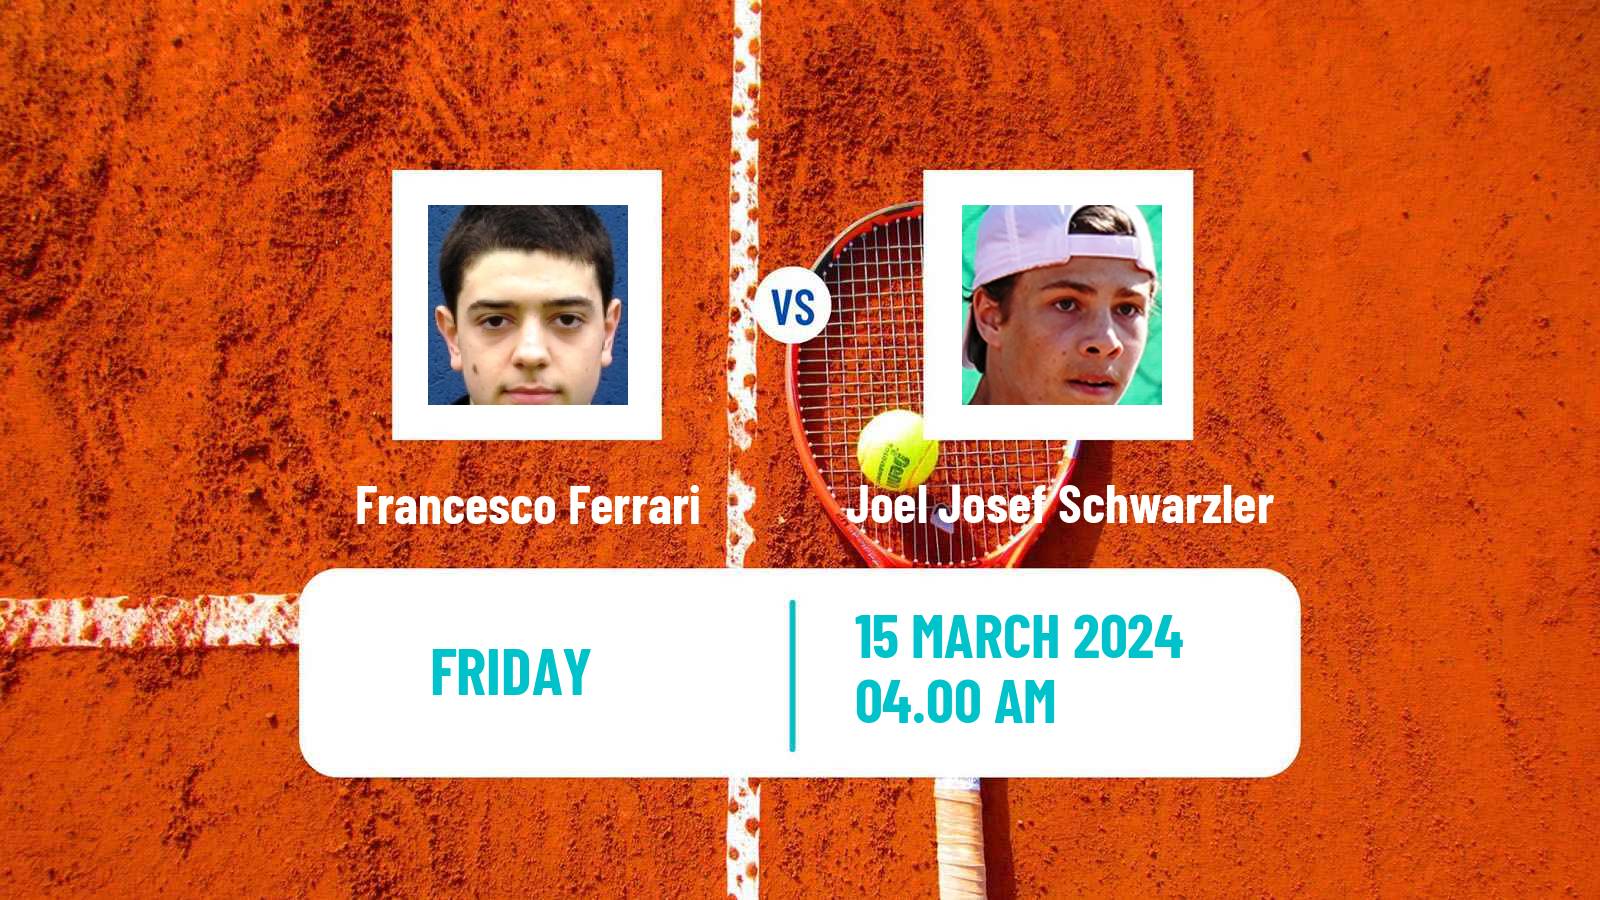 Tennis ITF M15 Antalya 6 Men Francesco Ferrari - Joel Josef Schwarzler